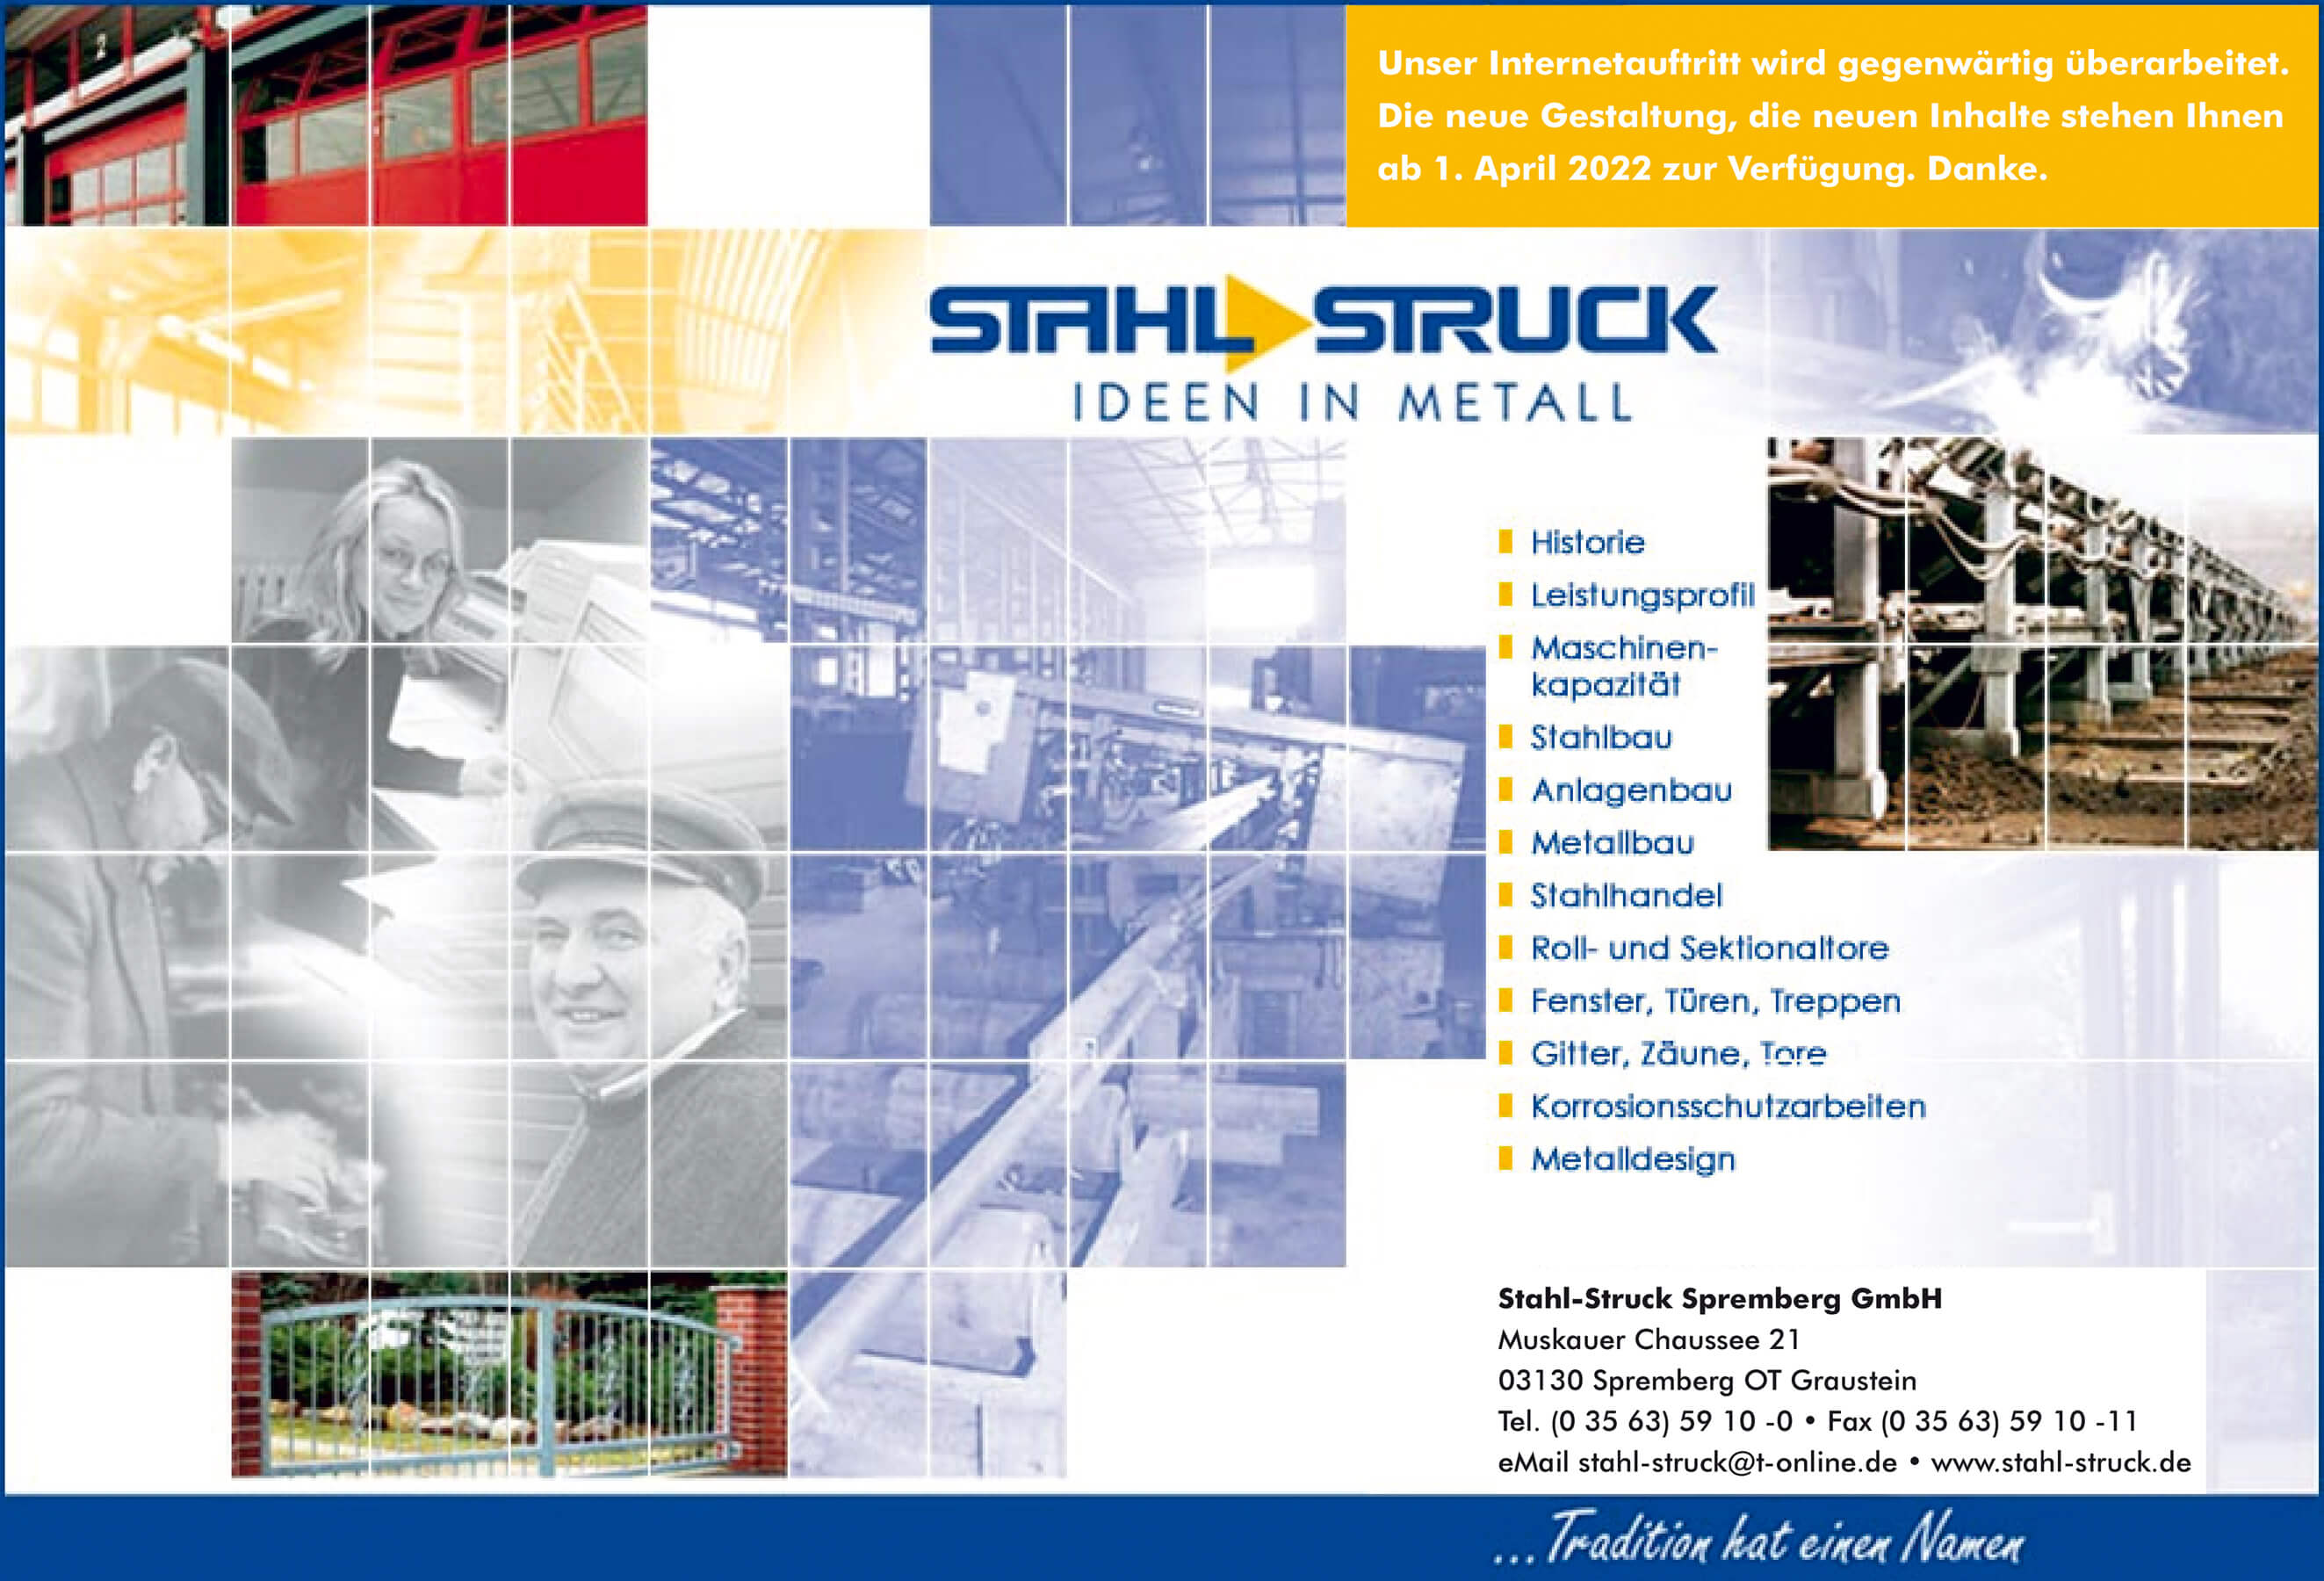 Stahl-Struck GmbH & Co.KG: Stahlbau • Anlagenbau • Metallbau • Stahlhandel • Roll- und Sektionaltore • Fenster, Türen, Treppen • Gitter, Zäune, Tore • Korrosionsschutzarbeiten • Metalldesign